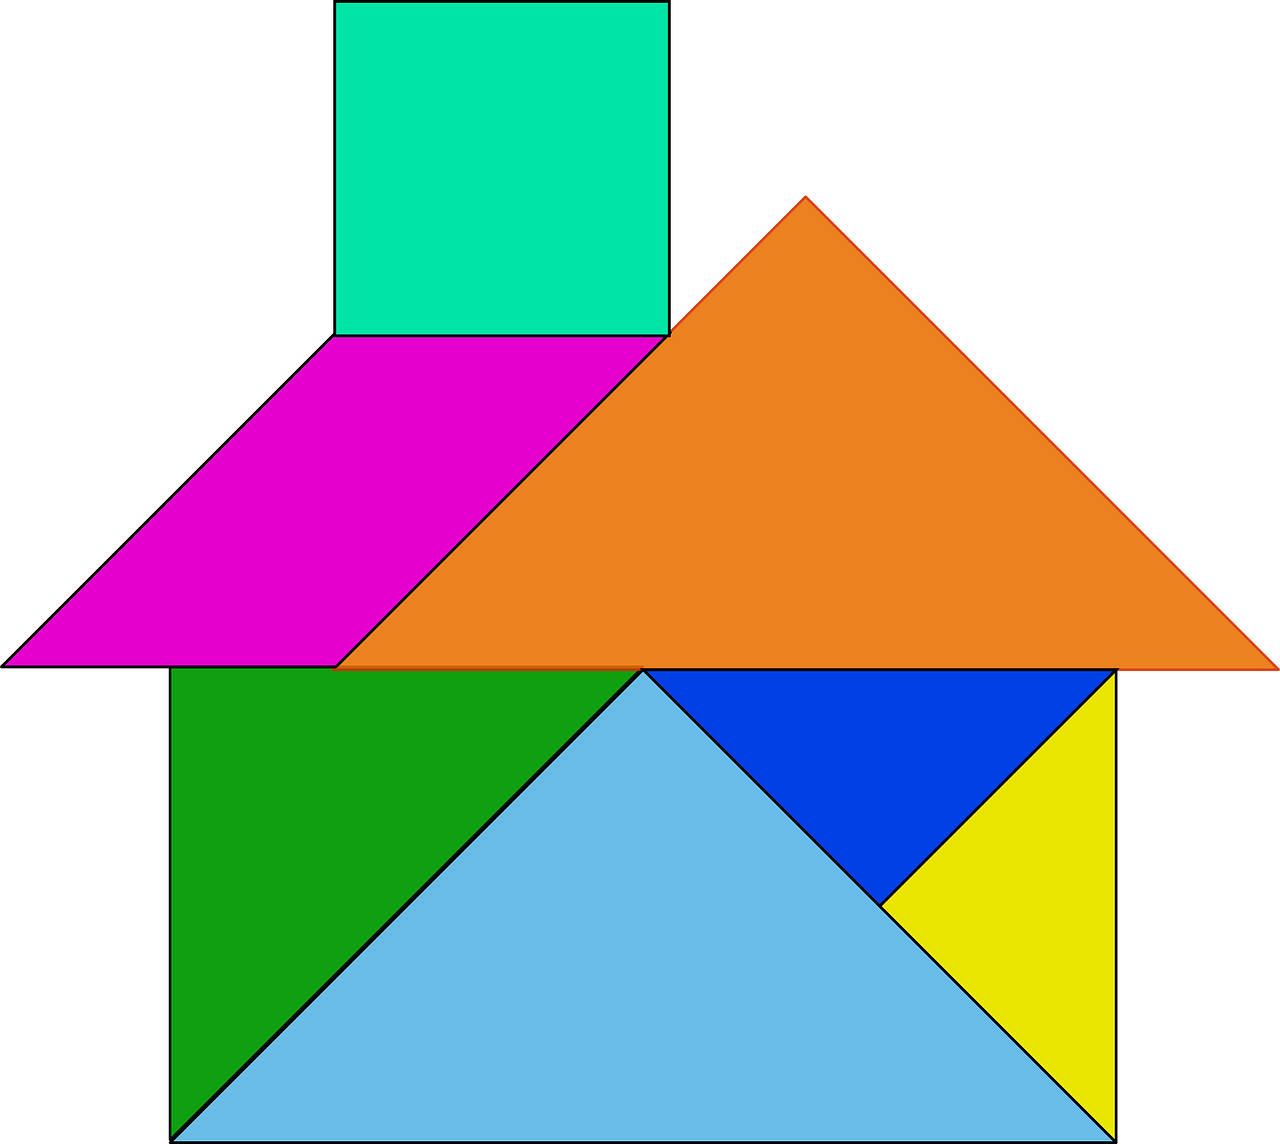 La imagen muestra una casa formada con las piezas del tangram